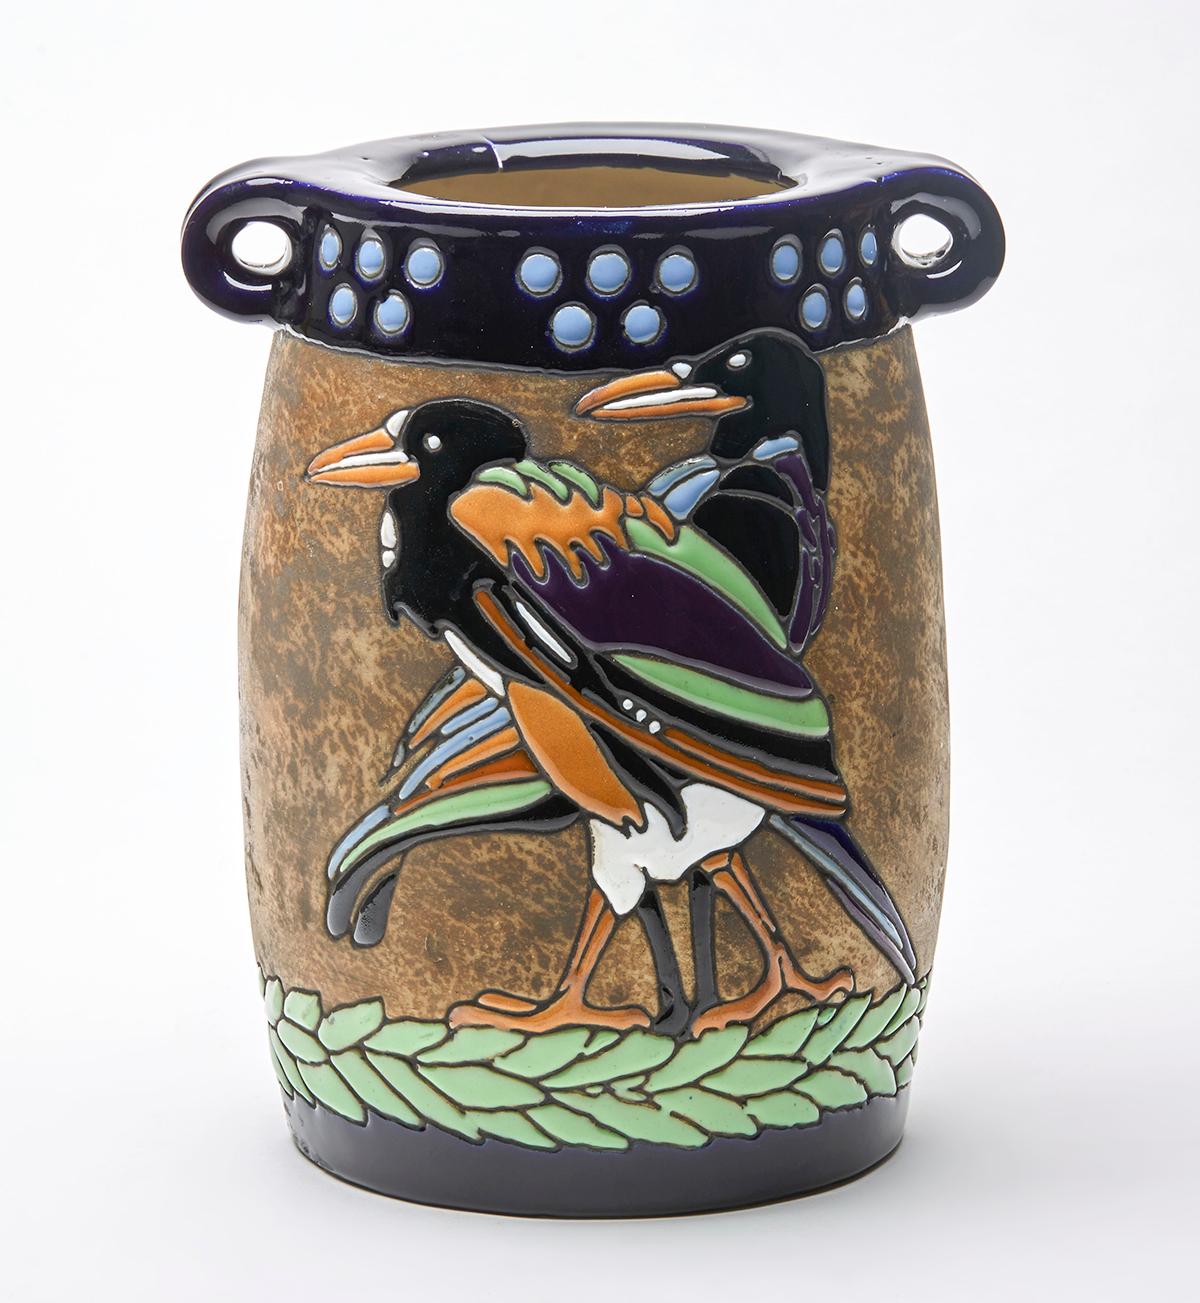 Un grand et impressionnant vase à deux anses en poterie impériale autrichienne Art Nouveau/Jugendstil Amphora avec des motifs d'oiseaux bordés de tubes, datant du début du 20e siècle. 

Outre les œuvres marquées par Reissner, Stellmacher et